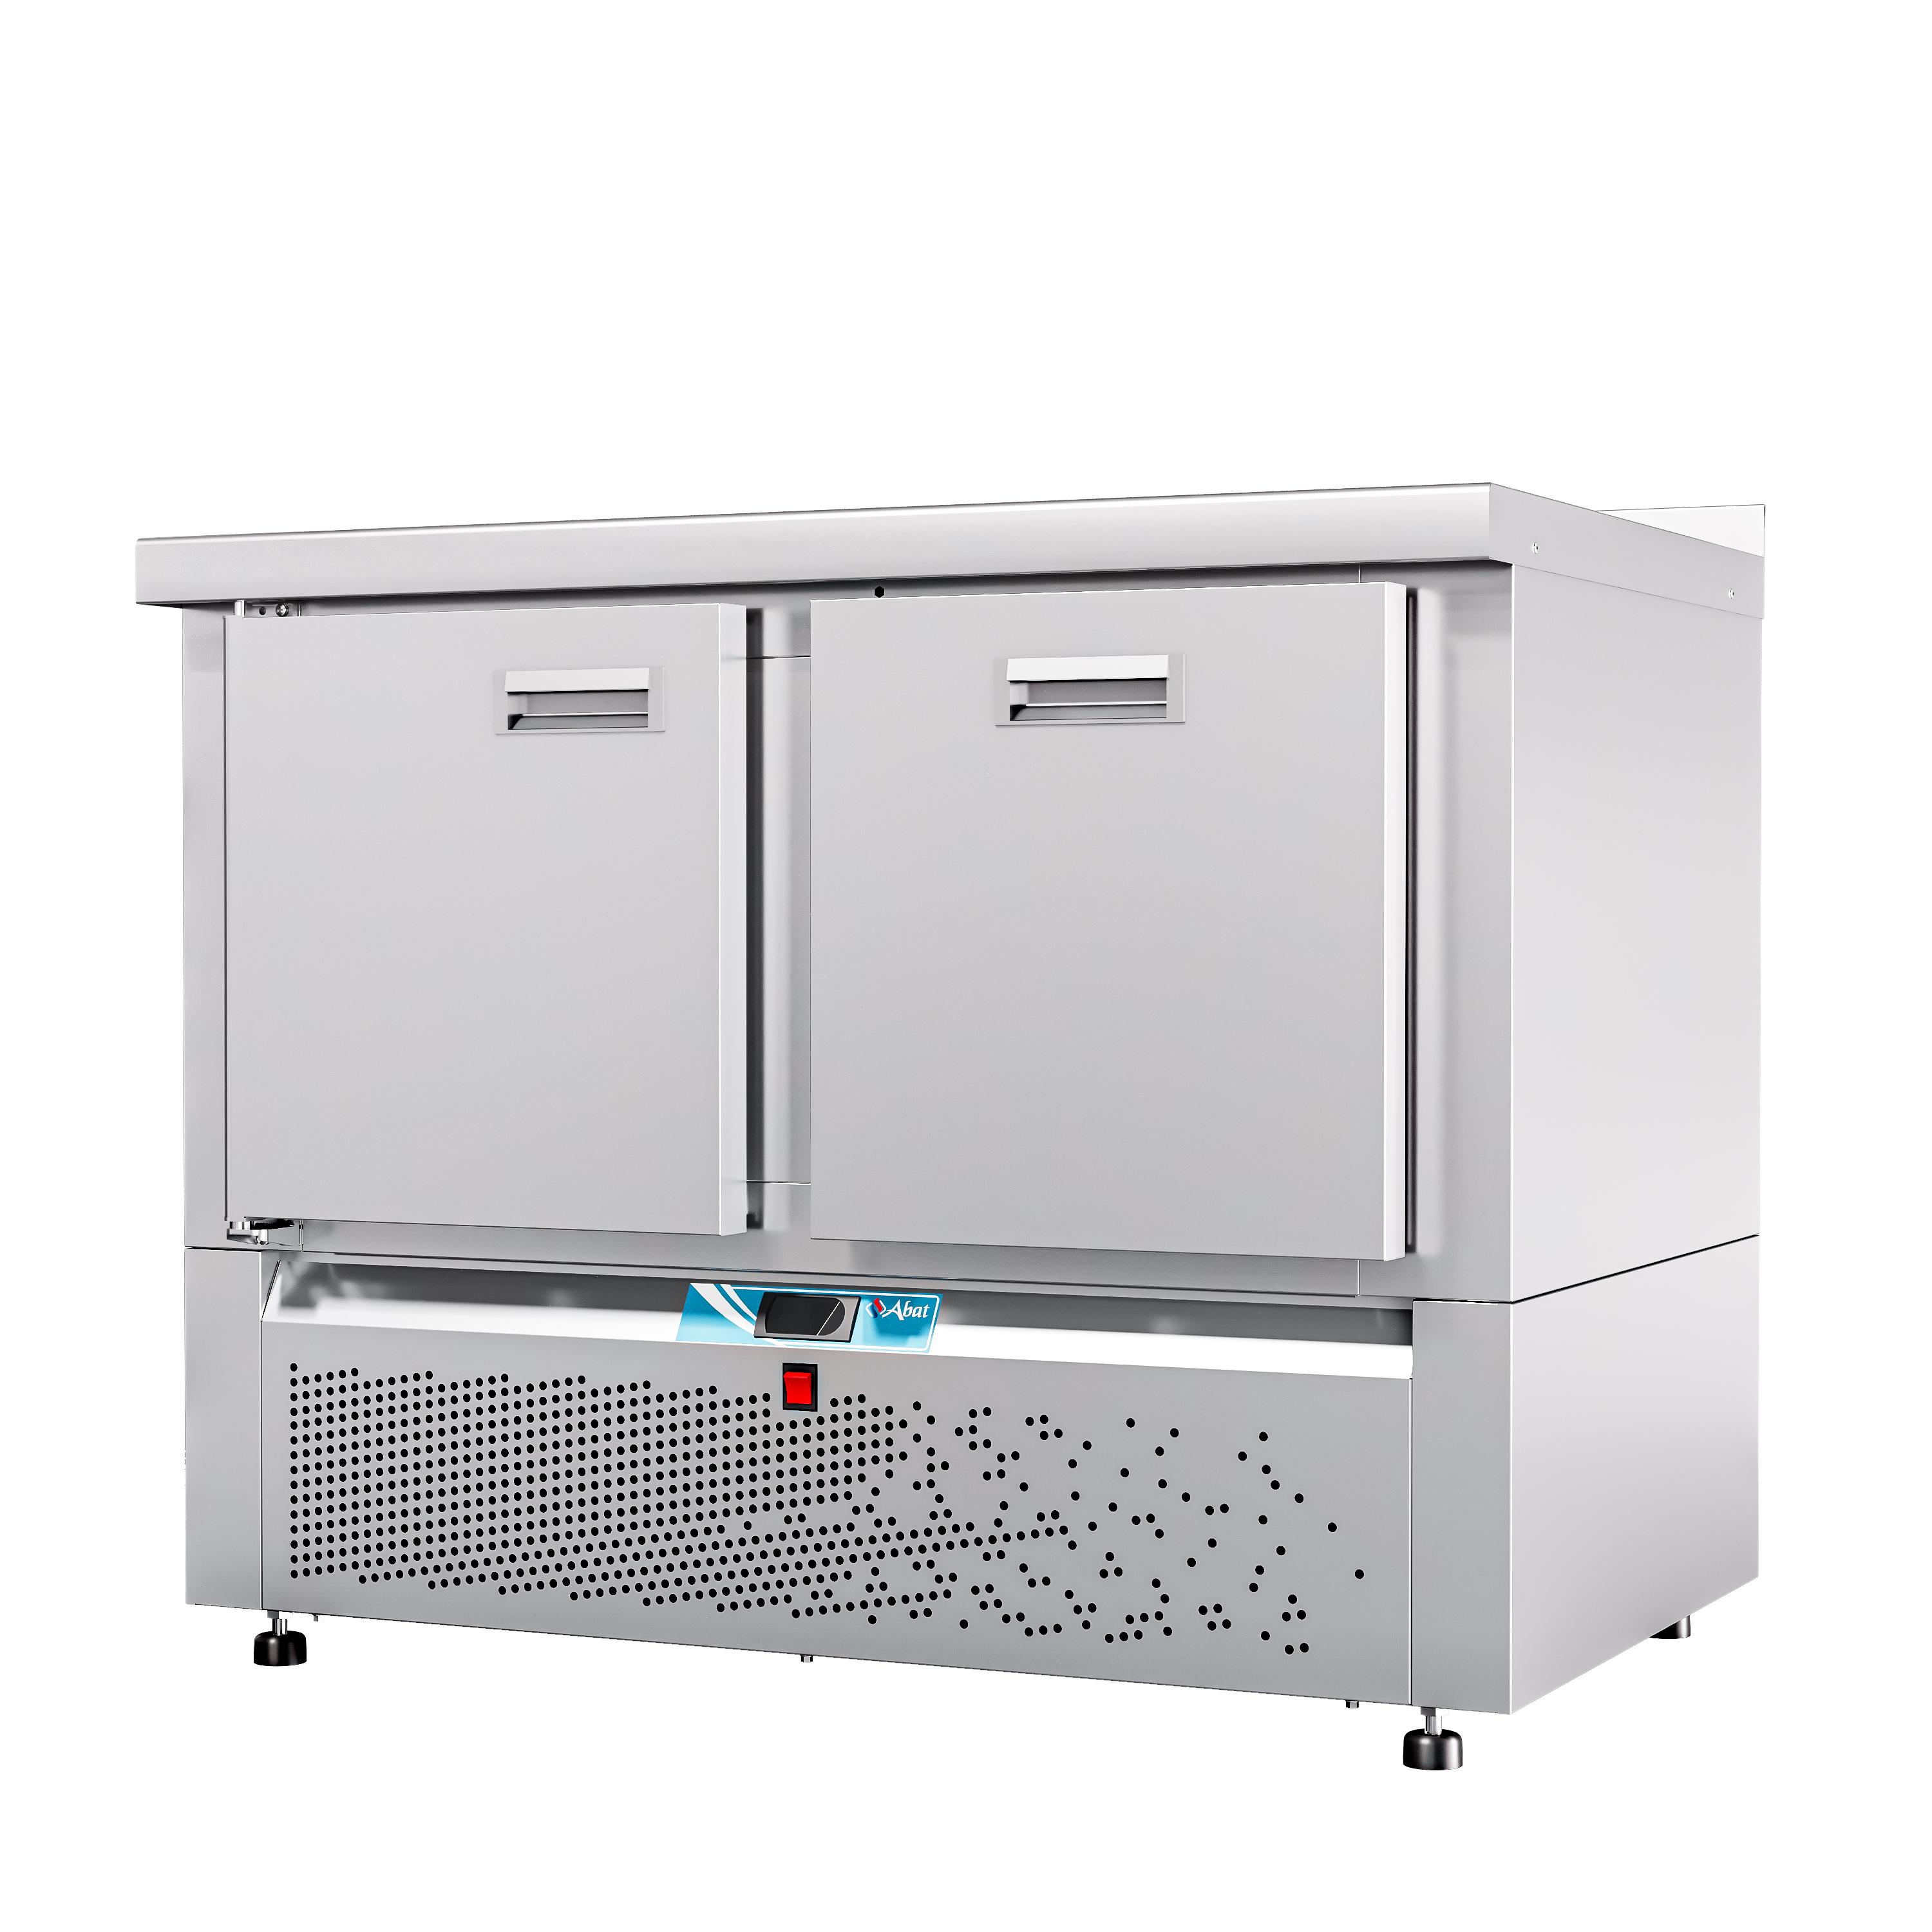 Стол холодильный низкотемпературный СХН-70Н-01 (дверь, ящик 1) с бортом